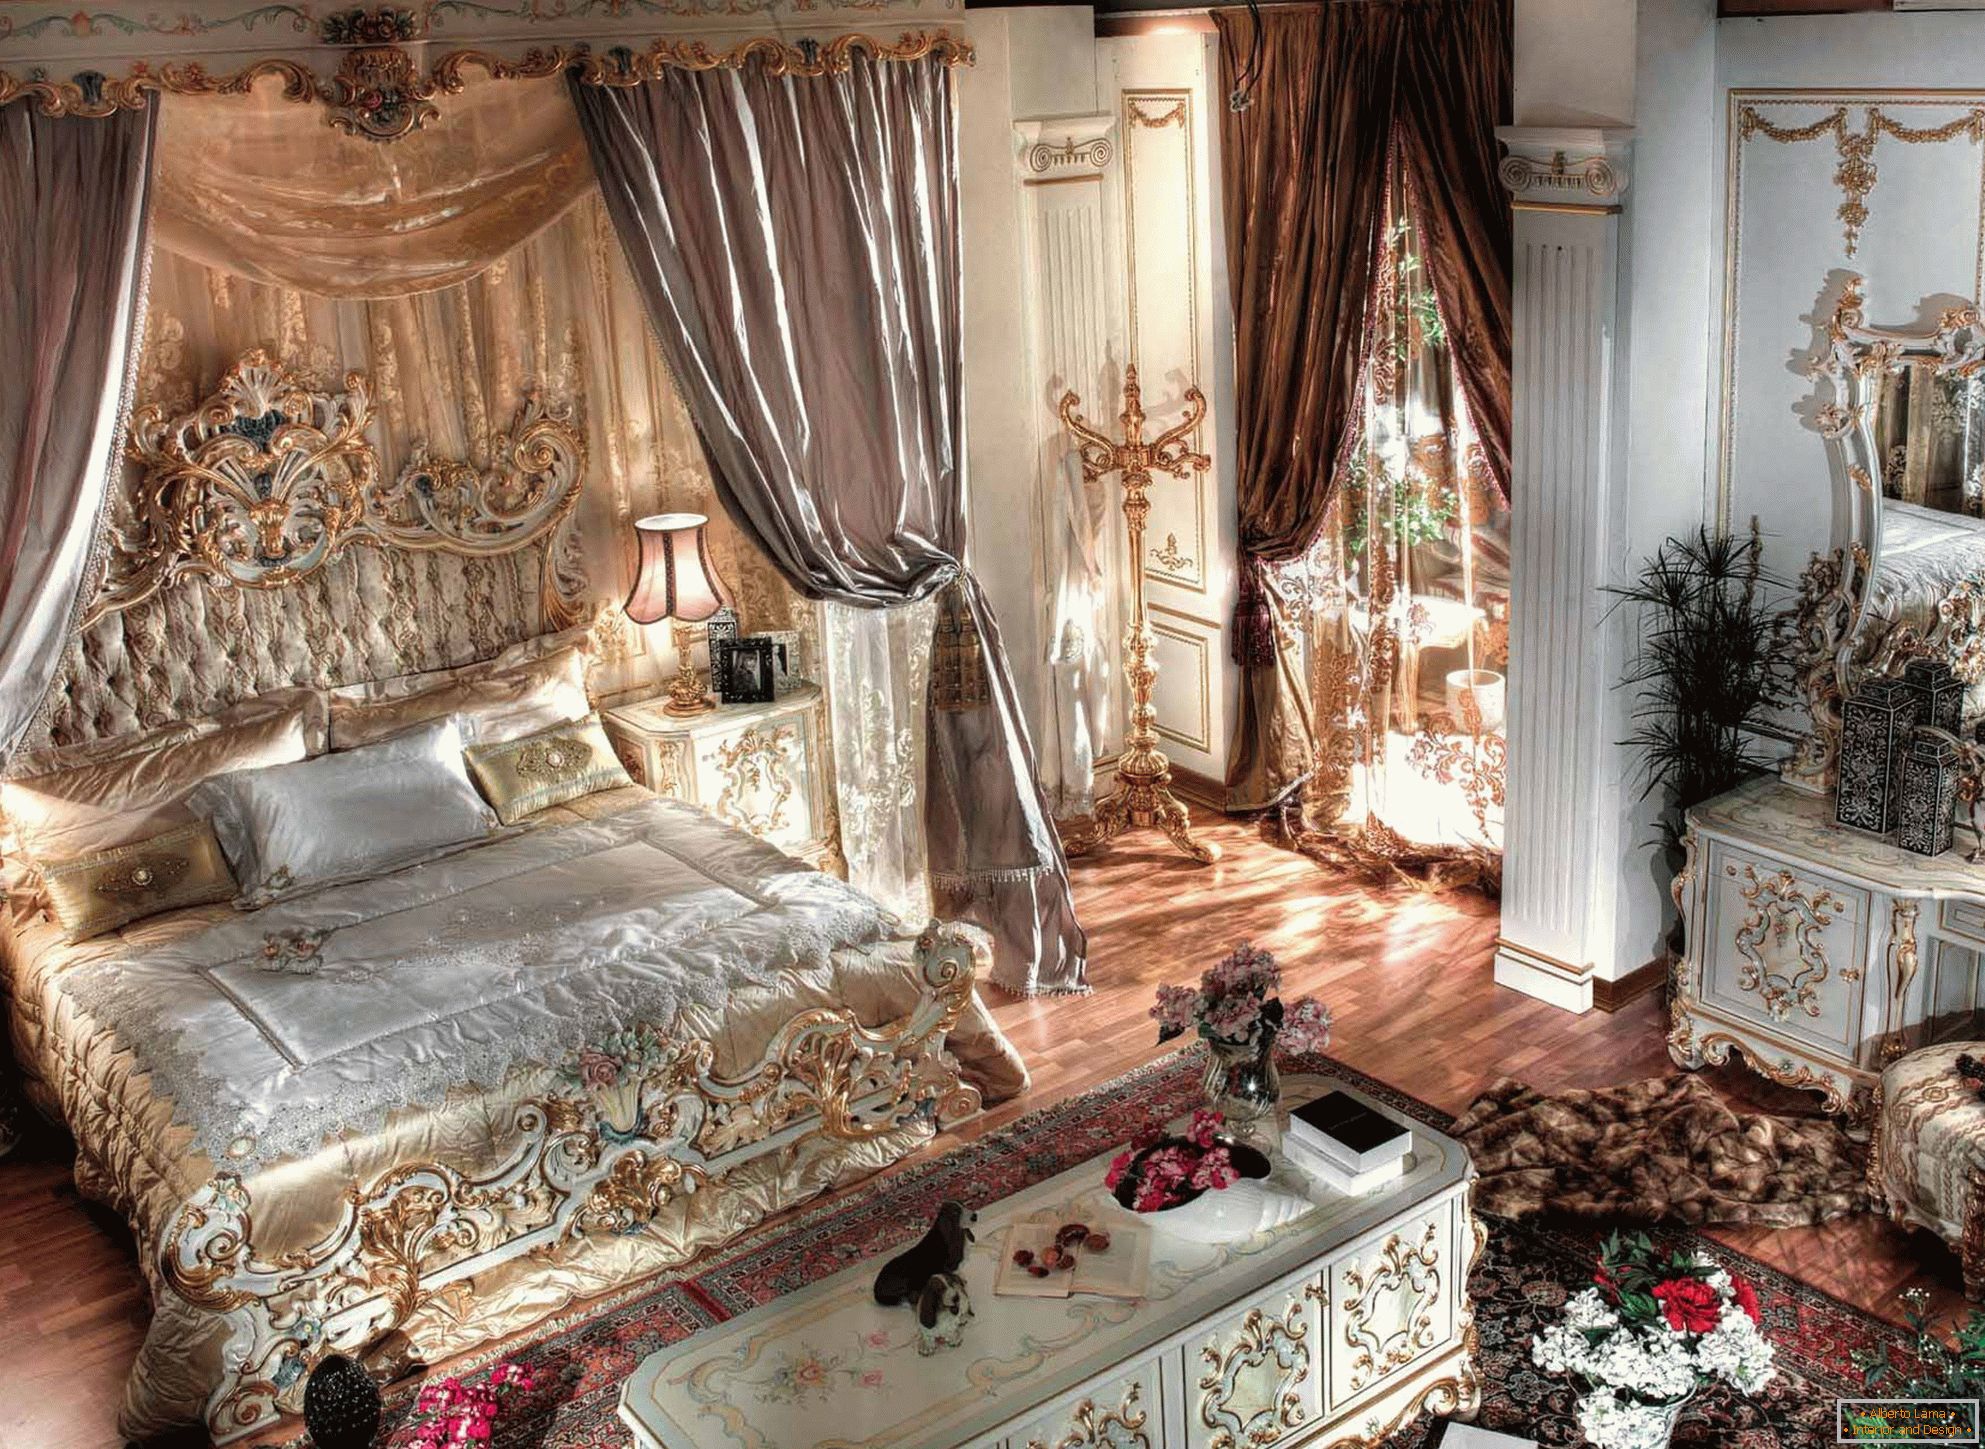 Dormitor luxos baroc cu tavane înalte. În centrul compoziției se află un pat masiv din lemn cu spate sculptat.